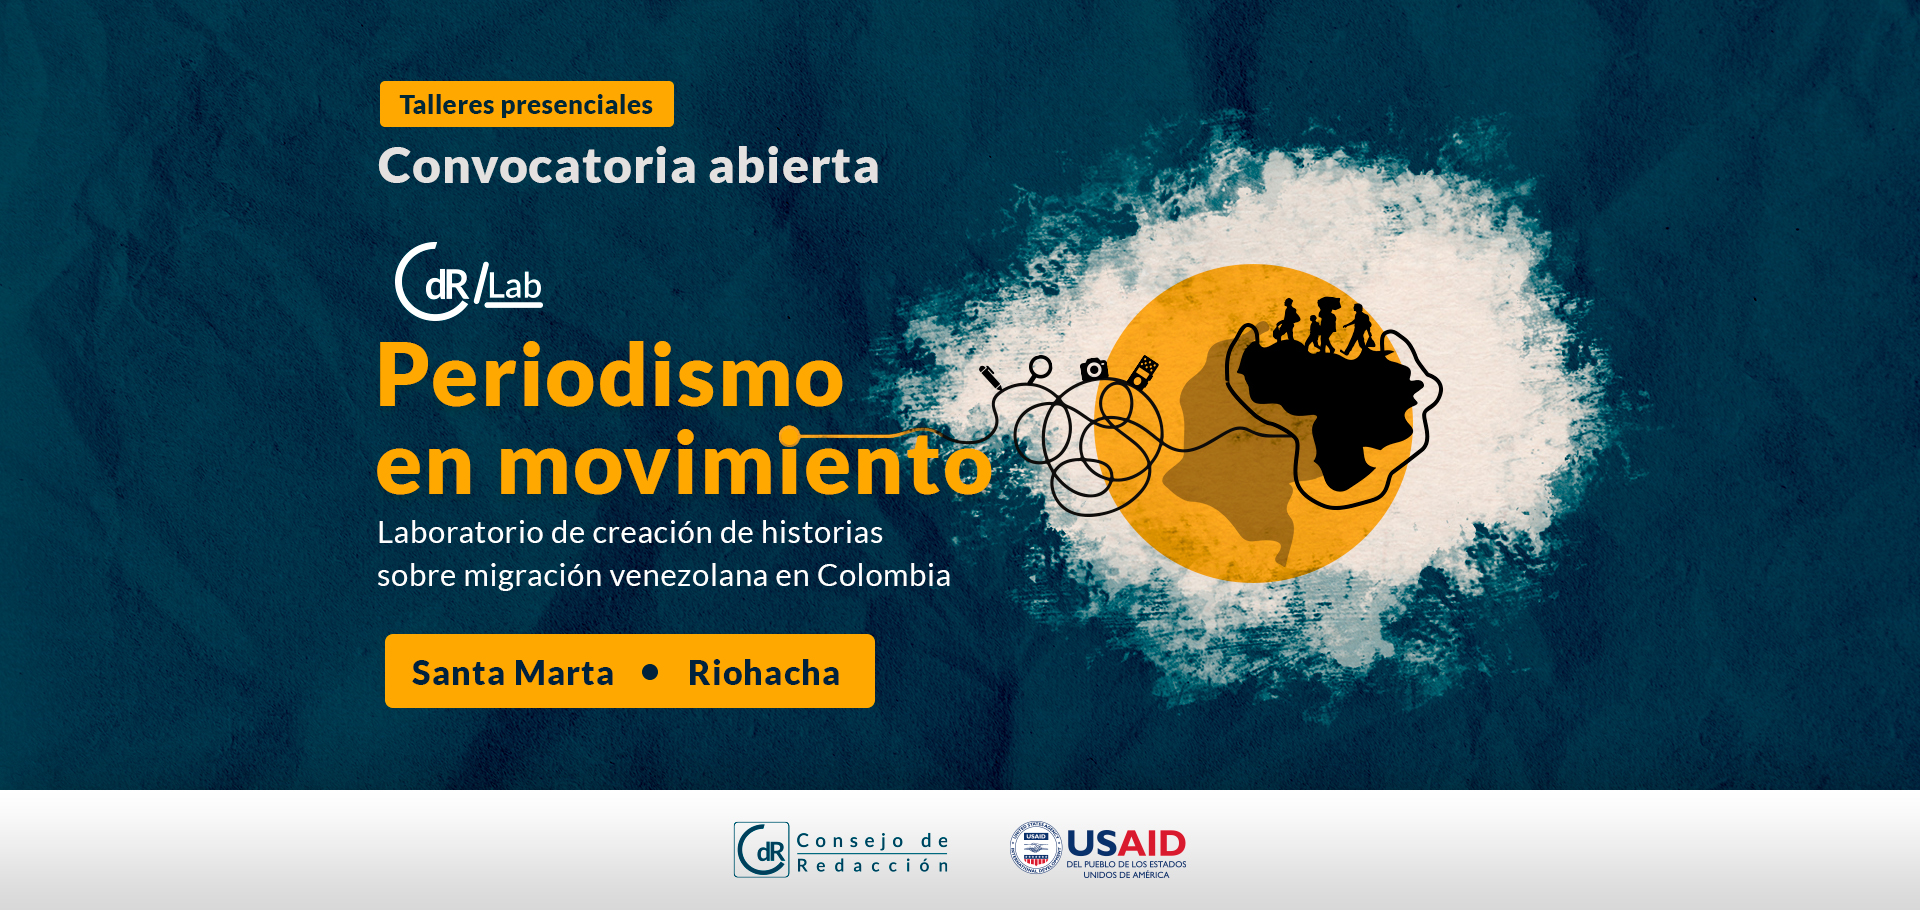 CdR/Lab Periodismo en movimiento Laboratorio de creación de historias sobre migración venezolana en Colombia